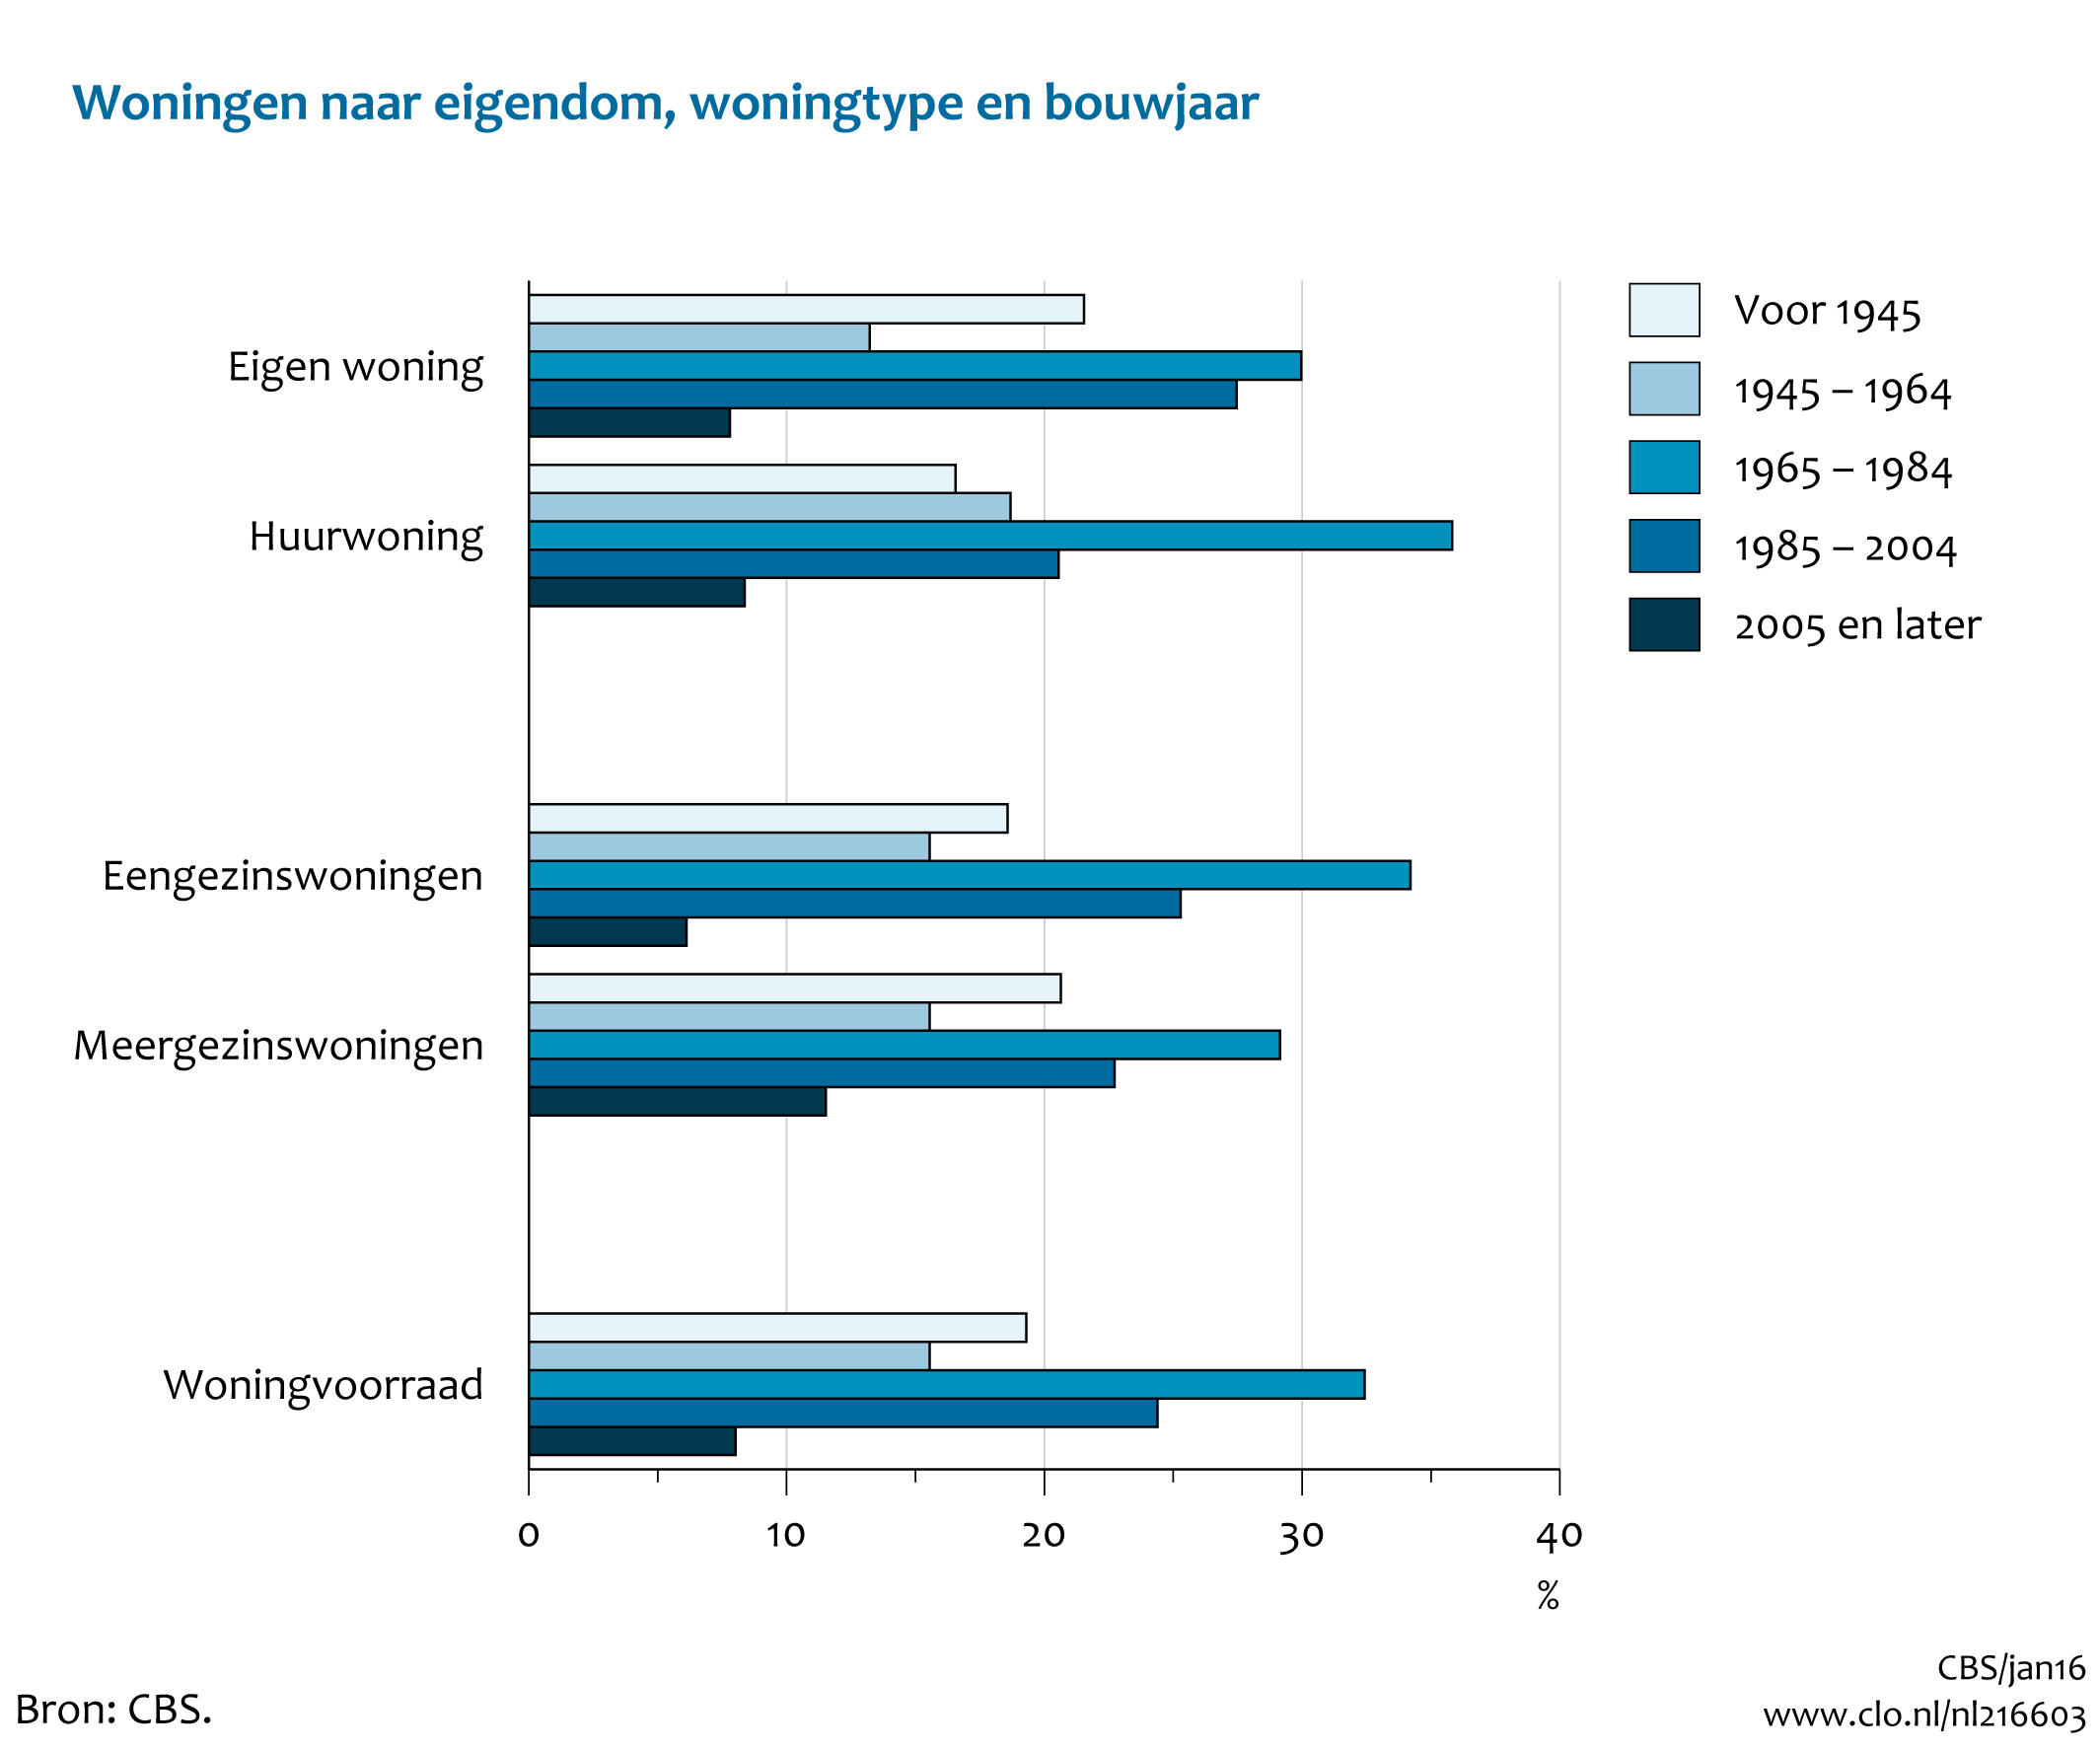 Figuur  Woningen naar eigendom, woningtype en bouwjaar, 2014. In de rest van de tekst wordt deze figuur uitgebreider uitgelegd.